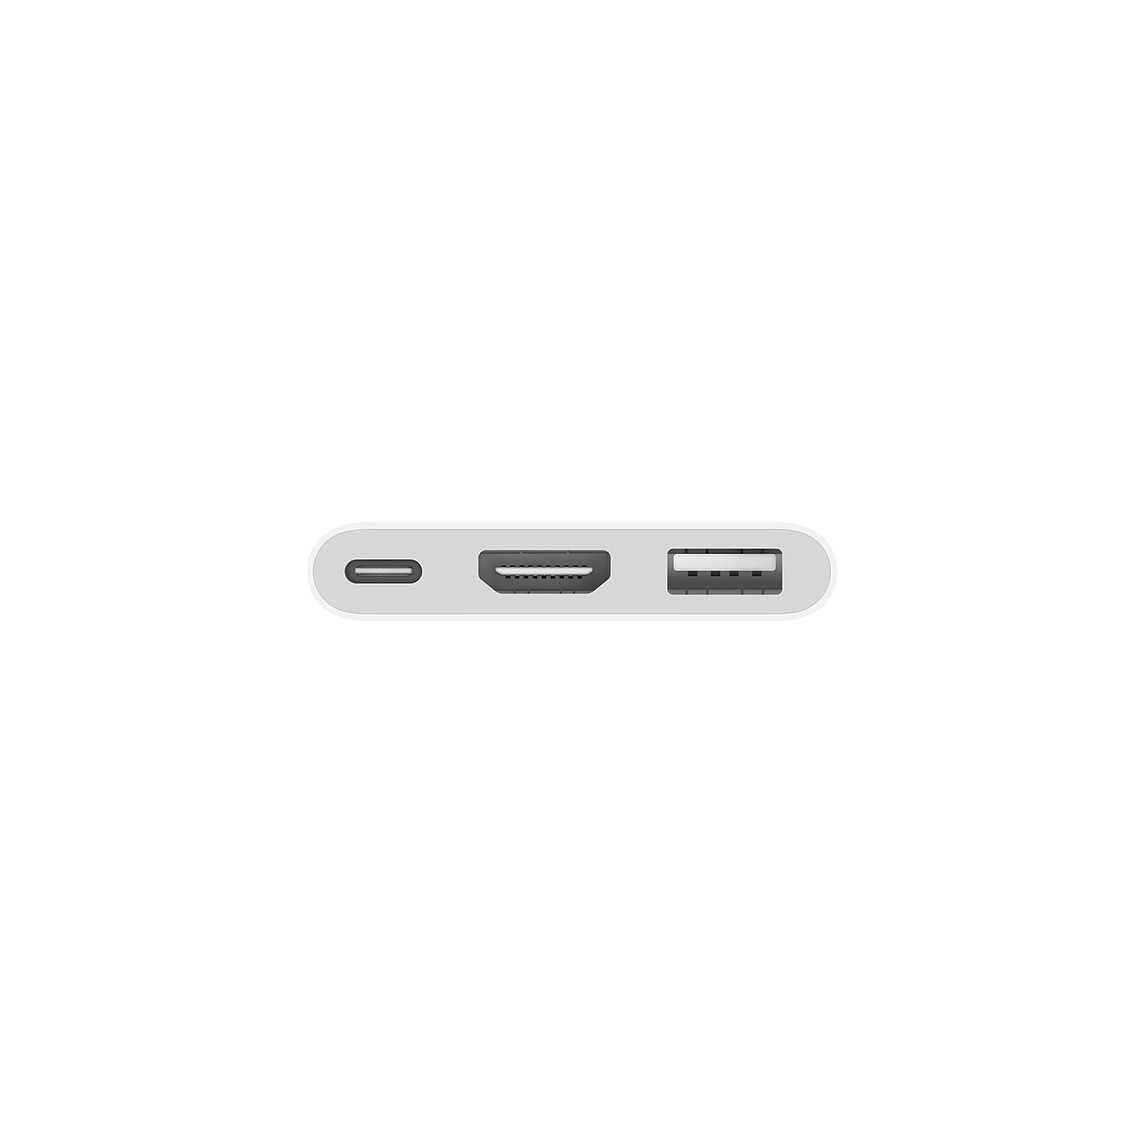 Apple USB-C Digital AV Multiport Adapter_2